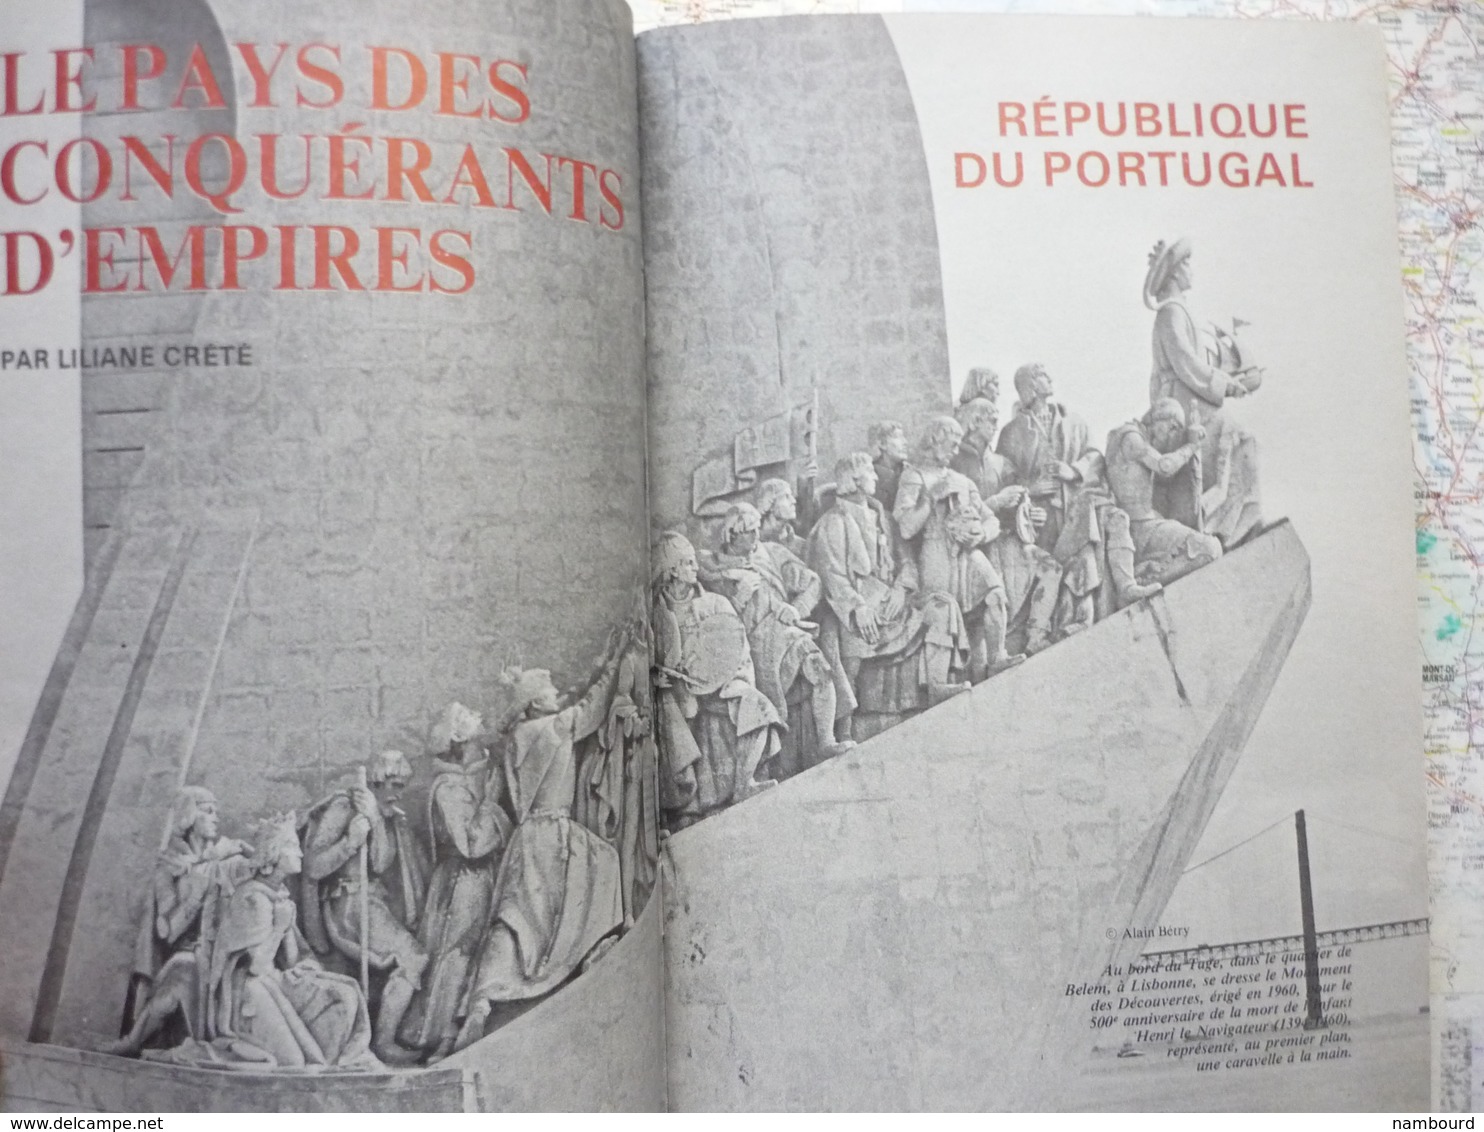 Geographia Tour Du Monde Dans Le Triangle D'or / La Pêche Aux Phoques / République Du Portugal N°237 Juin 1979 - Géographie